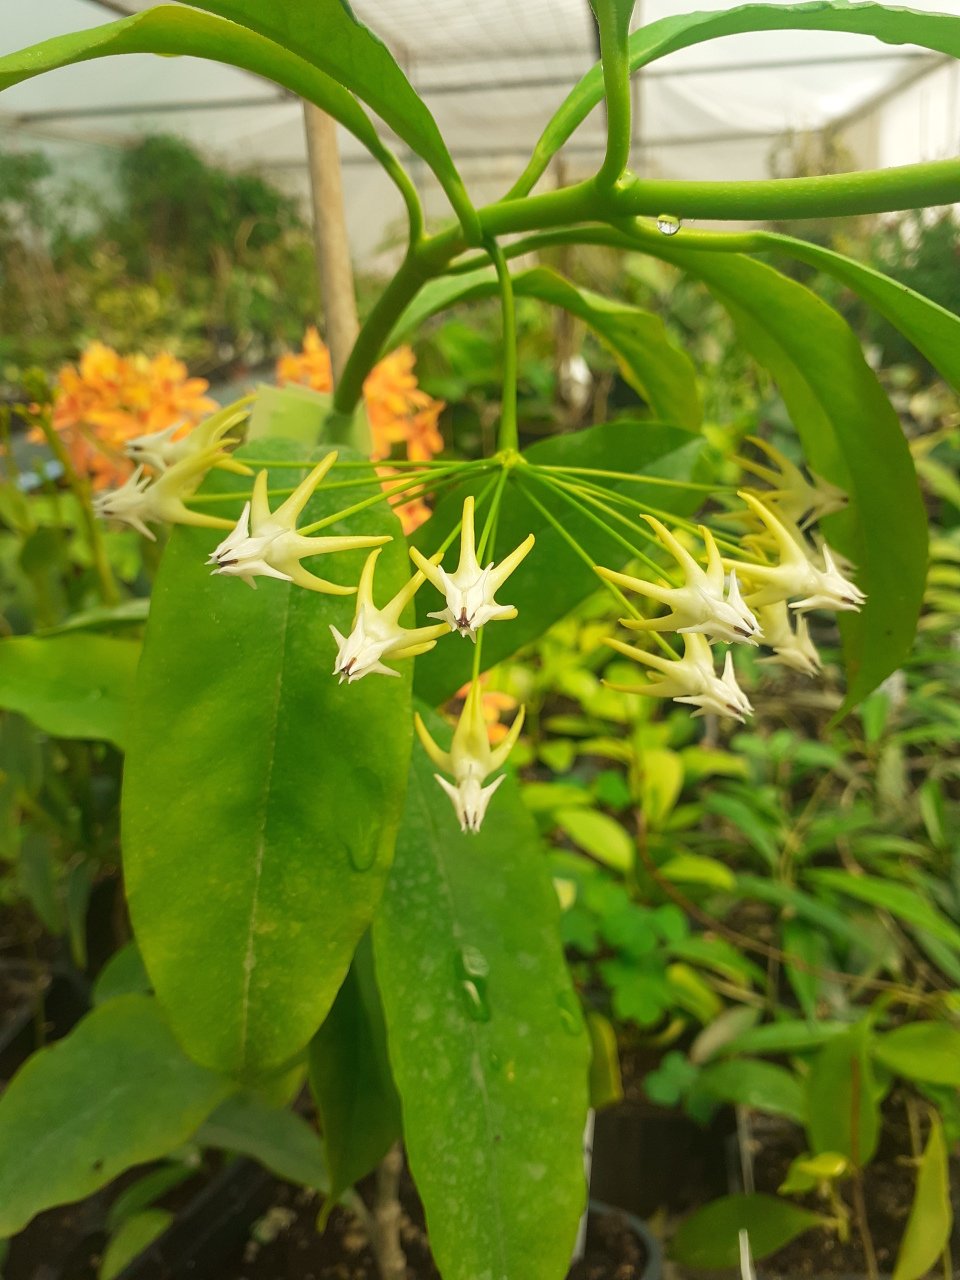 Hoya Multiflora mum çiçeği 50 - 80 cm boyda orta boy, güçlü sürgünlü, saksıda köklü bol tomurcuklu tomurcuklu (kod:mum99L) 2. resimdeki